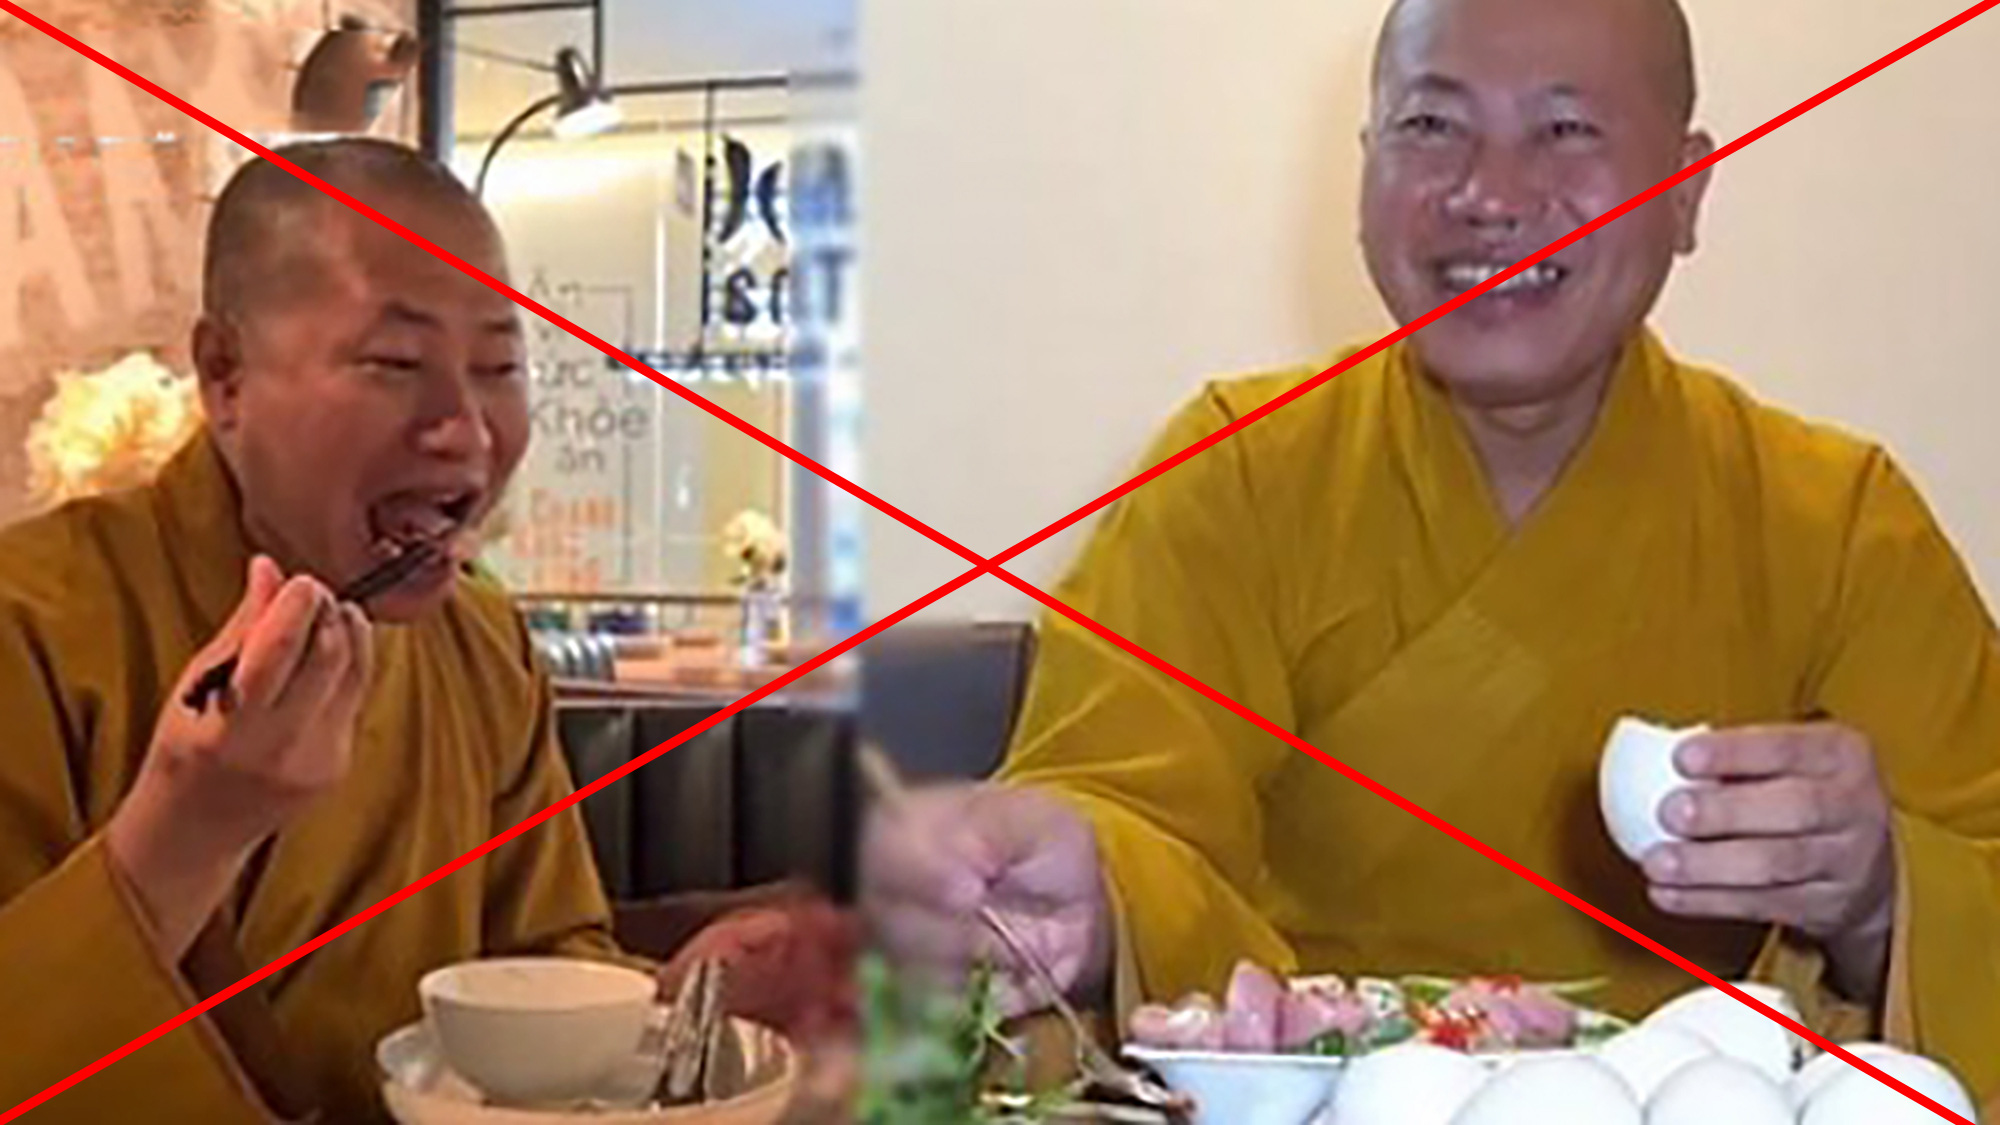 Khám phá đoạn video phản ánh sự khác biệt giữa đạo đức tôn giáo và thực tế xã hội, khi thầy chùa ăn thịt chó.